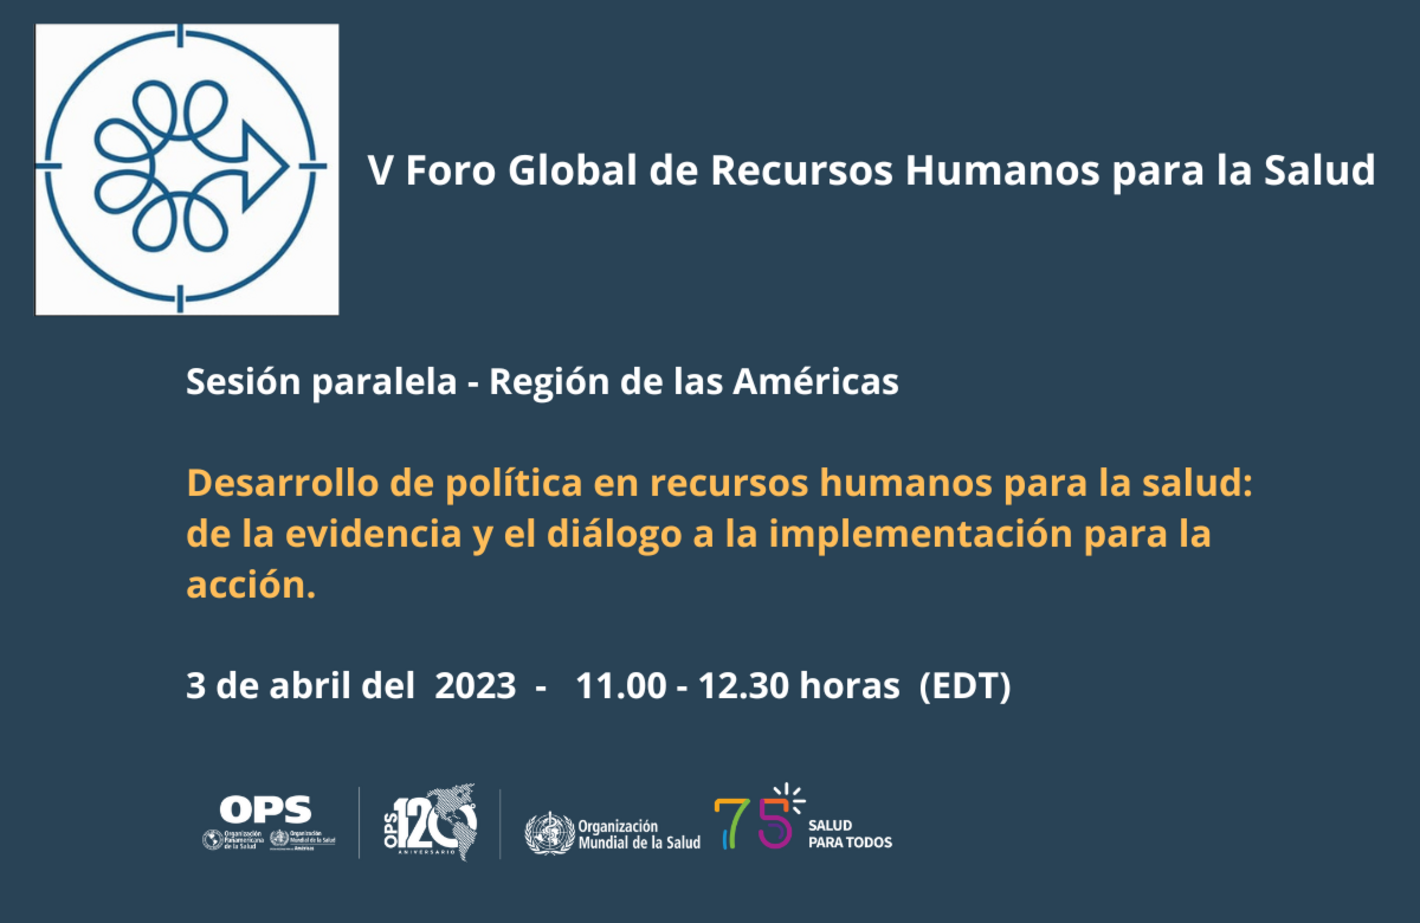 V Foro Global de Recursos Humanos para la Salud. Sesión paralela 3 de abril del 2023